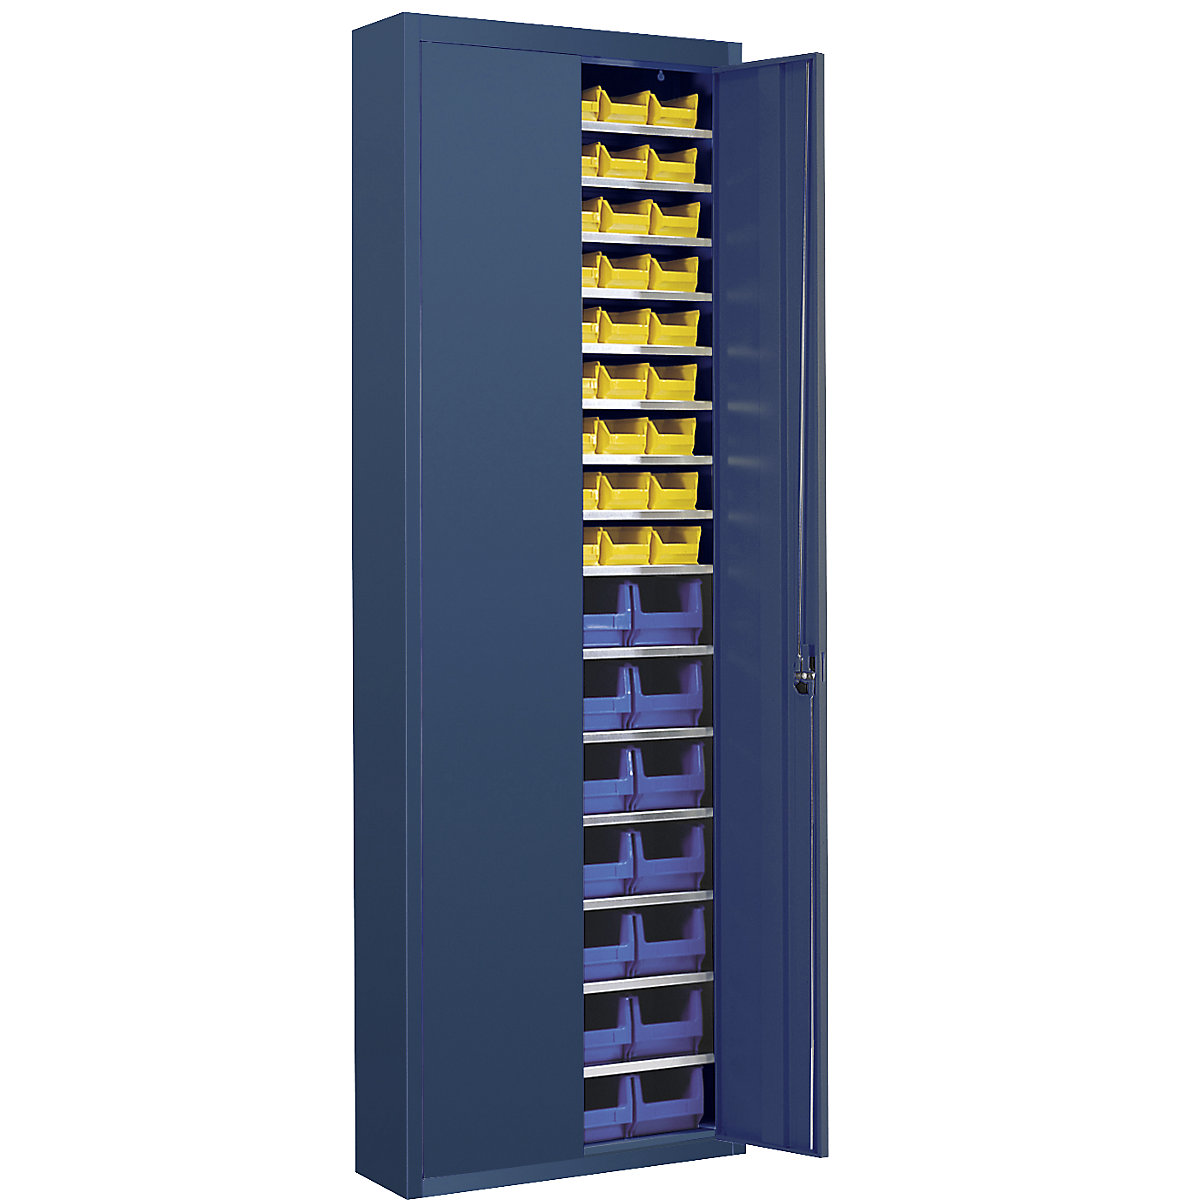 Raktári szekrény nyitott tárolódobozokkal – mauser, ma x szé x mé 2150 x 680 x 280 mm, egyszínű, kék, 82 doboz-9